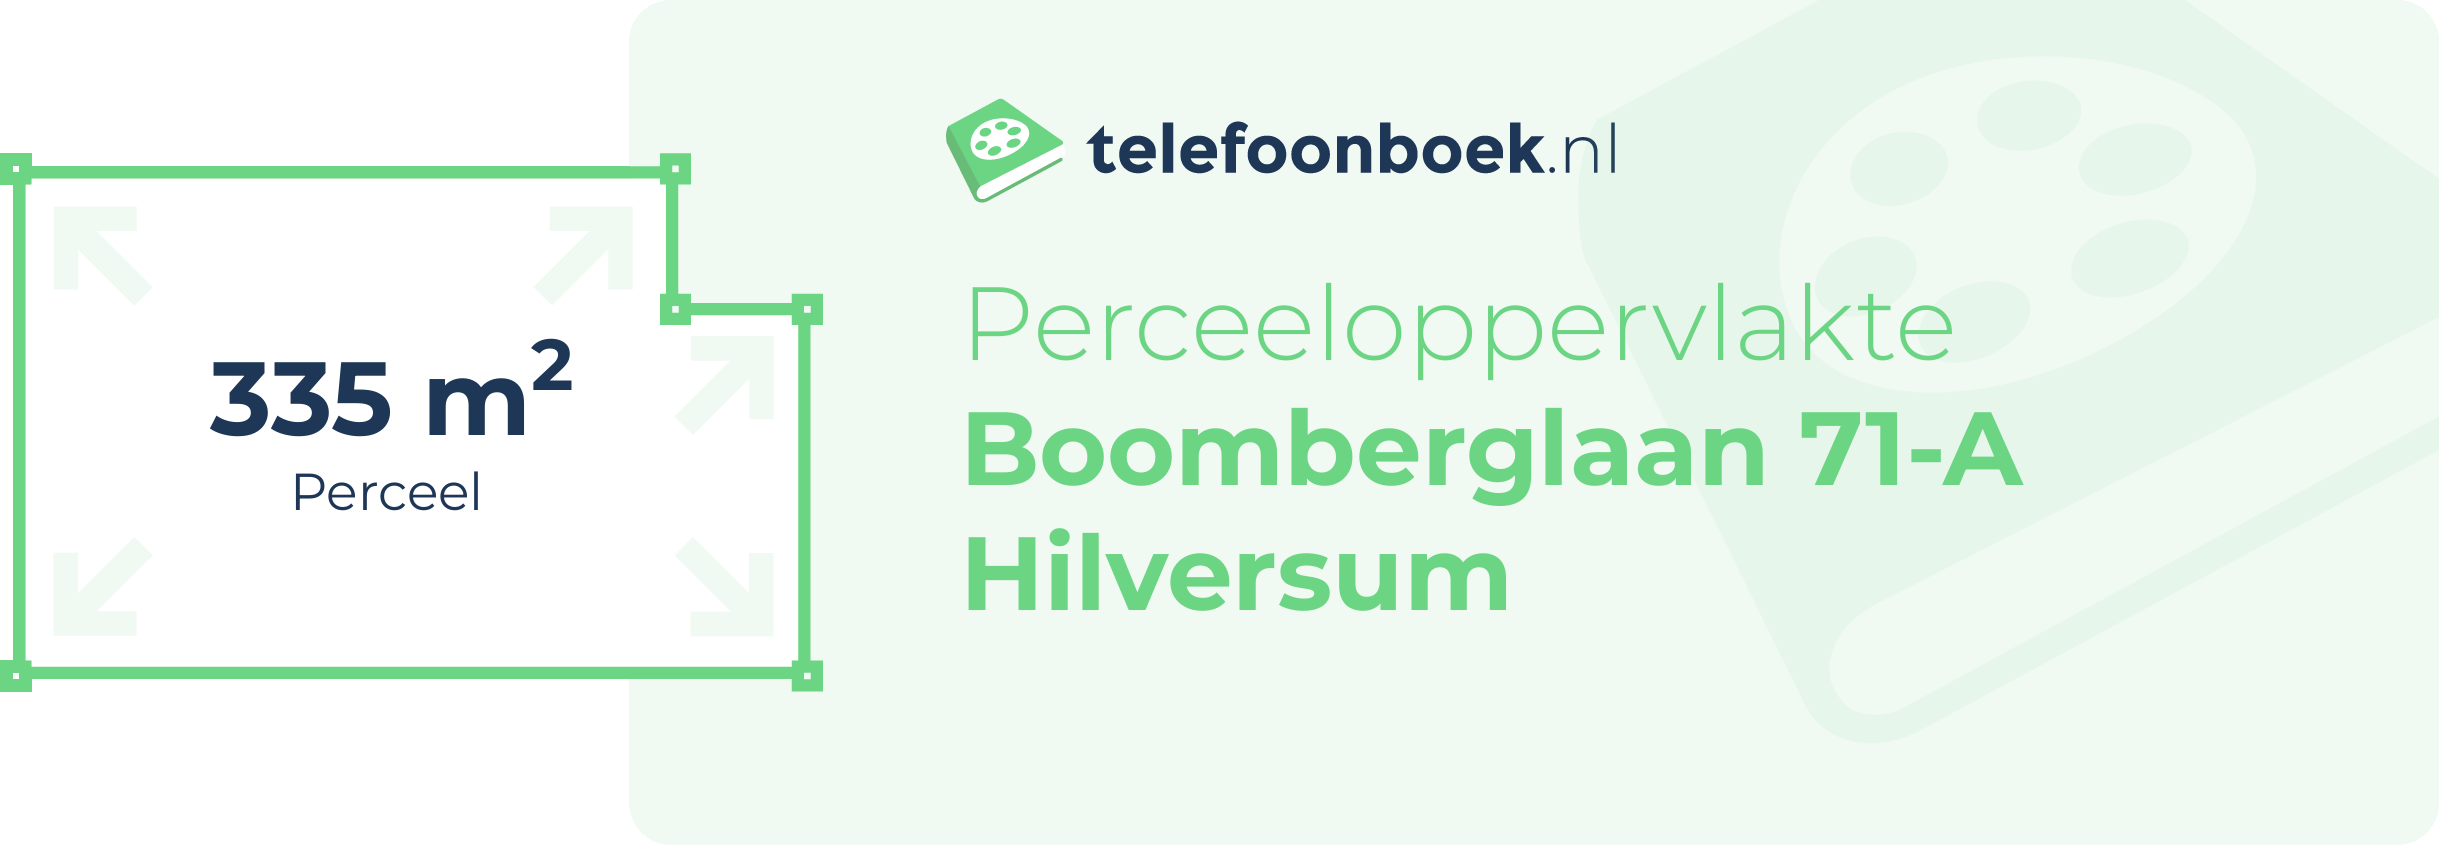 Perceeloppervlakte Boomberglaan 71-A Hilversum